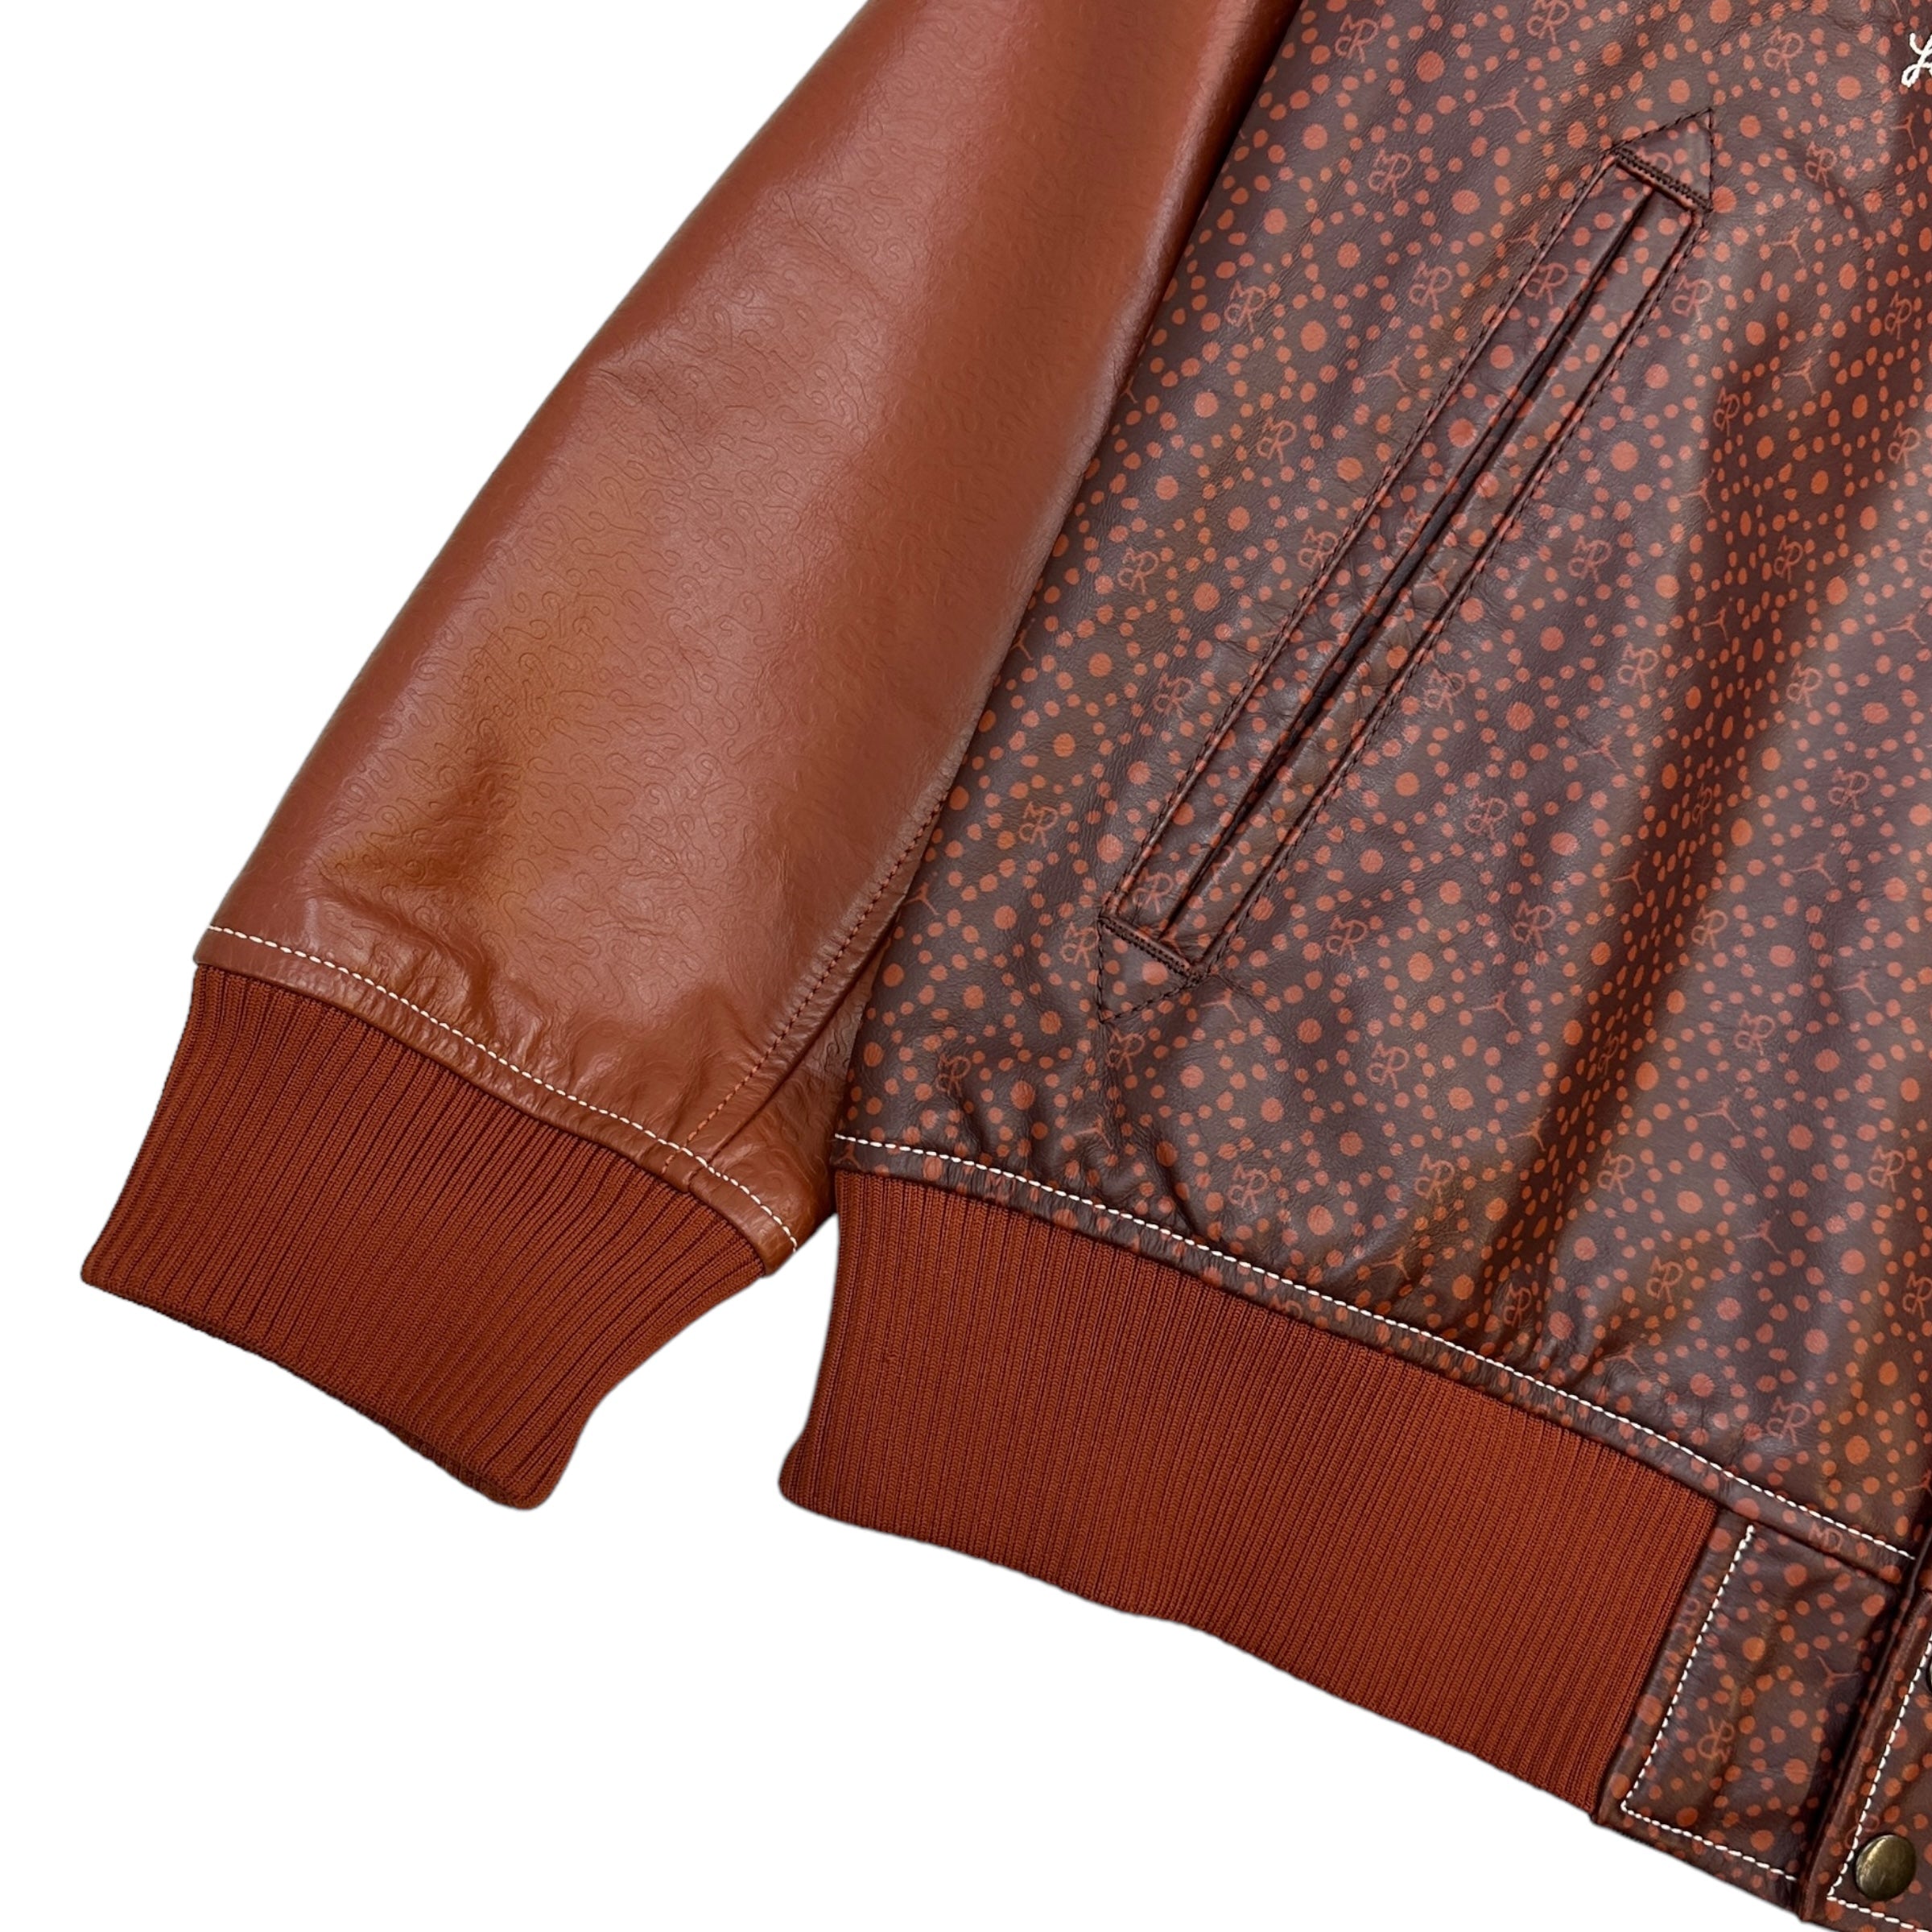 Maison Chateau Rouge x Jordan Leather Varsity Jacket